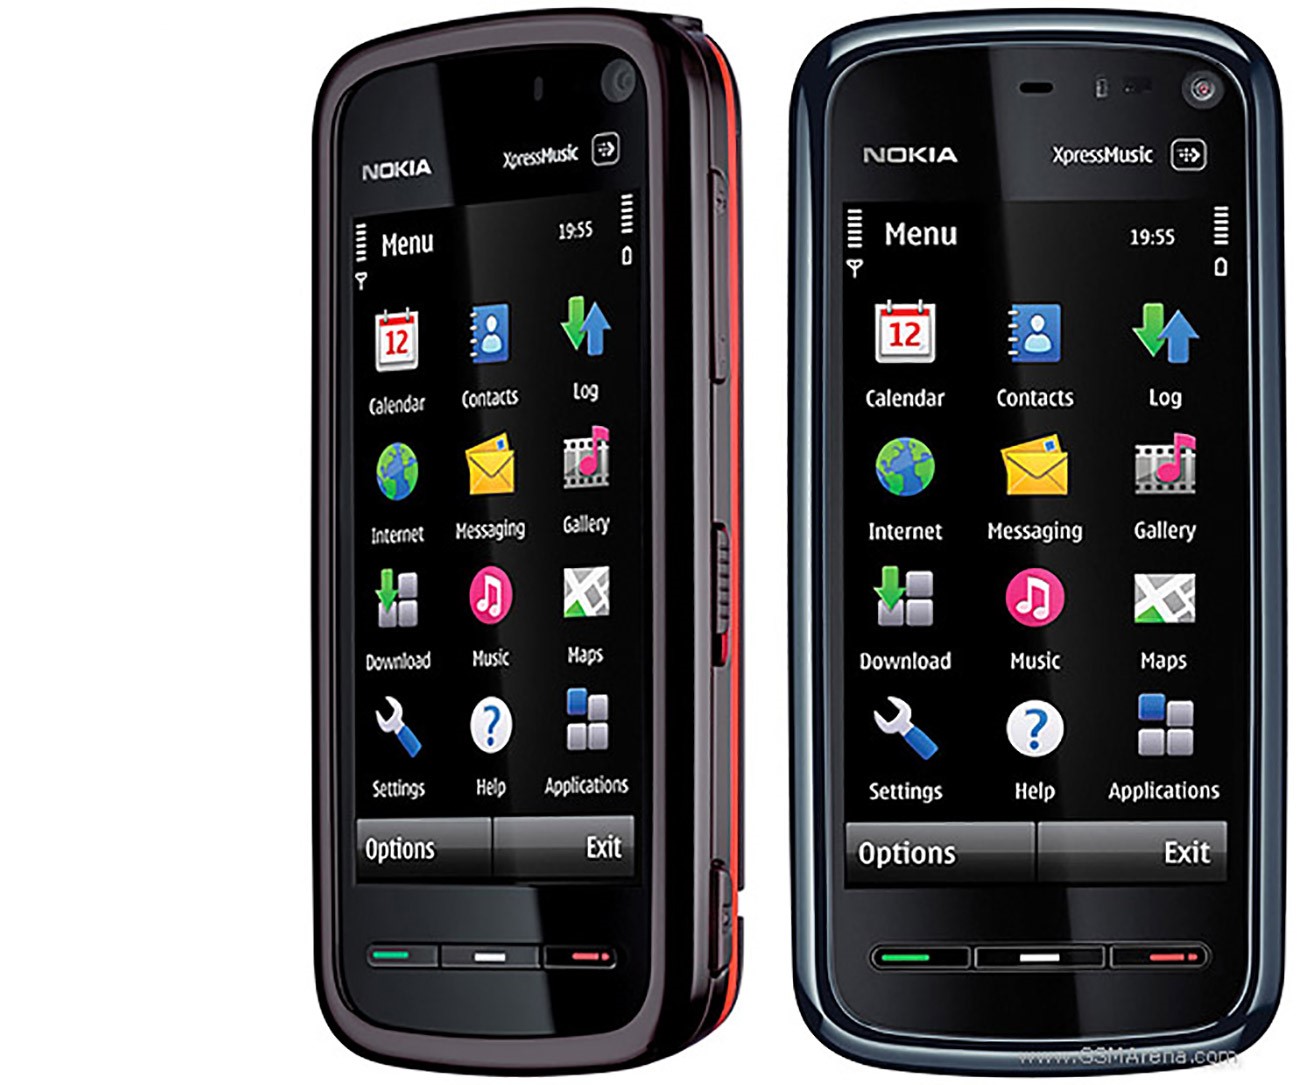 Nokia 5800 XPRESSMUSIC